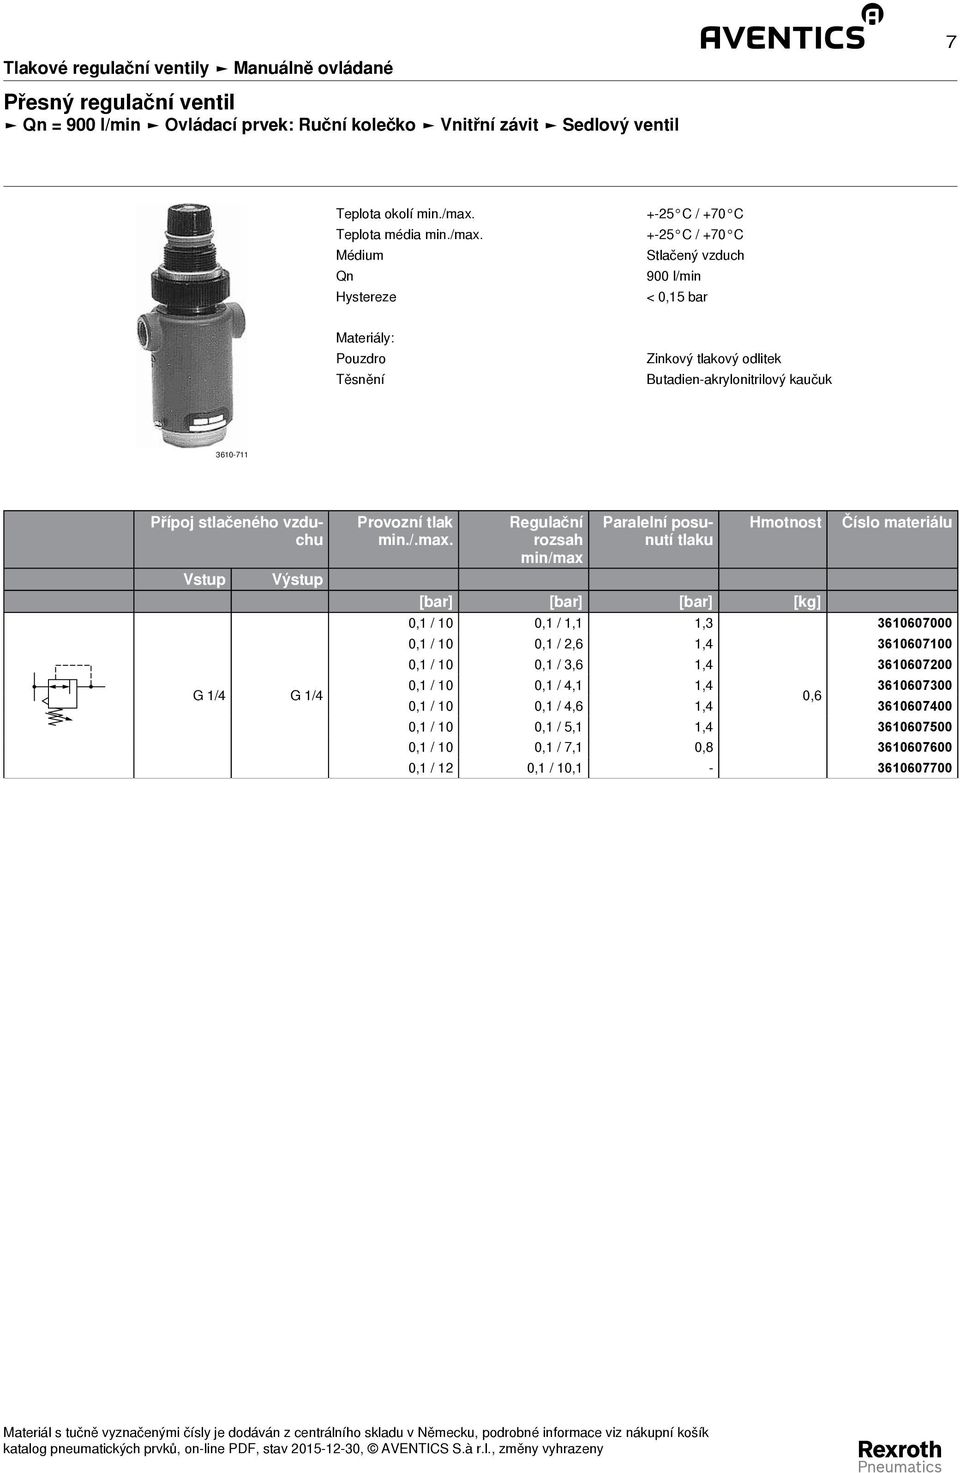 Médium Qn Hystereze + - 5 C / +7 C + - 5 C / +7 C Stlačený vzduch 9 l/min <,15 bar Materiály: Pouzdro Těsnění Zinkový tlakový odlitek Butadien -